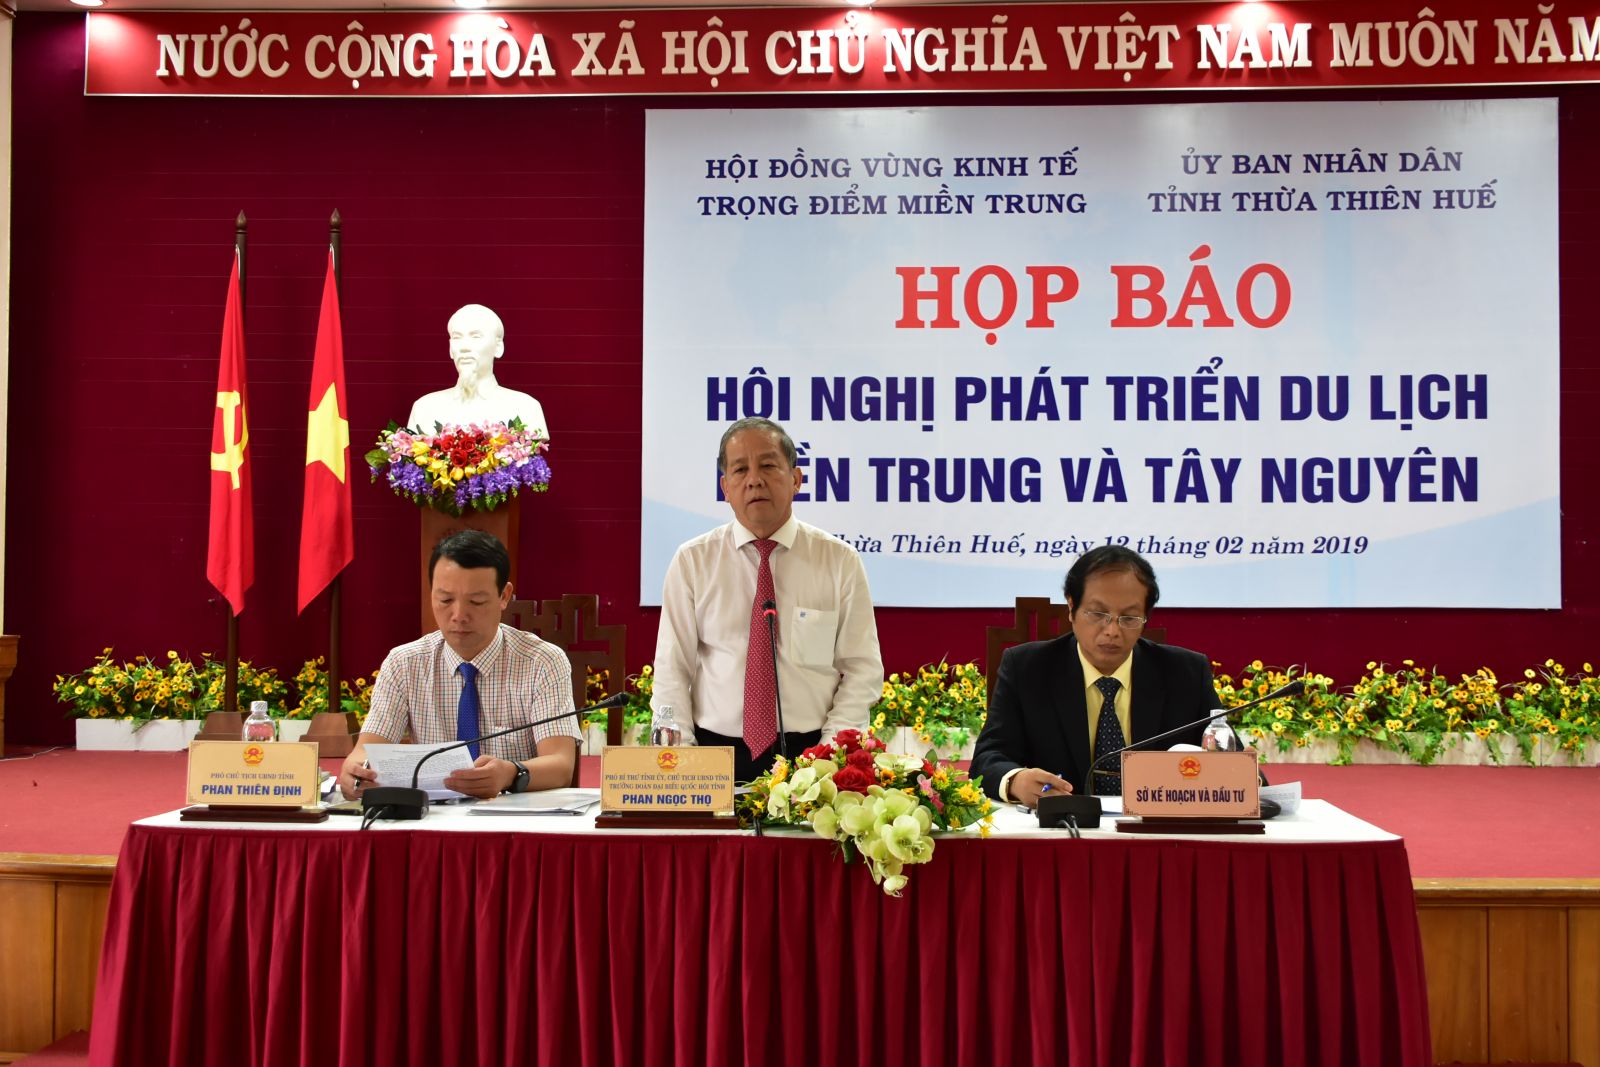 Chủ tịch UBND tỉnh Thừa Thiên-Huế Phan Ngọc Thọ (giữa) thông tin về Hội nghị phát triển du lịch miền Trung và Tây Nguyên. Ảnh: VGP/Thế Phong